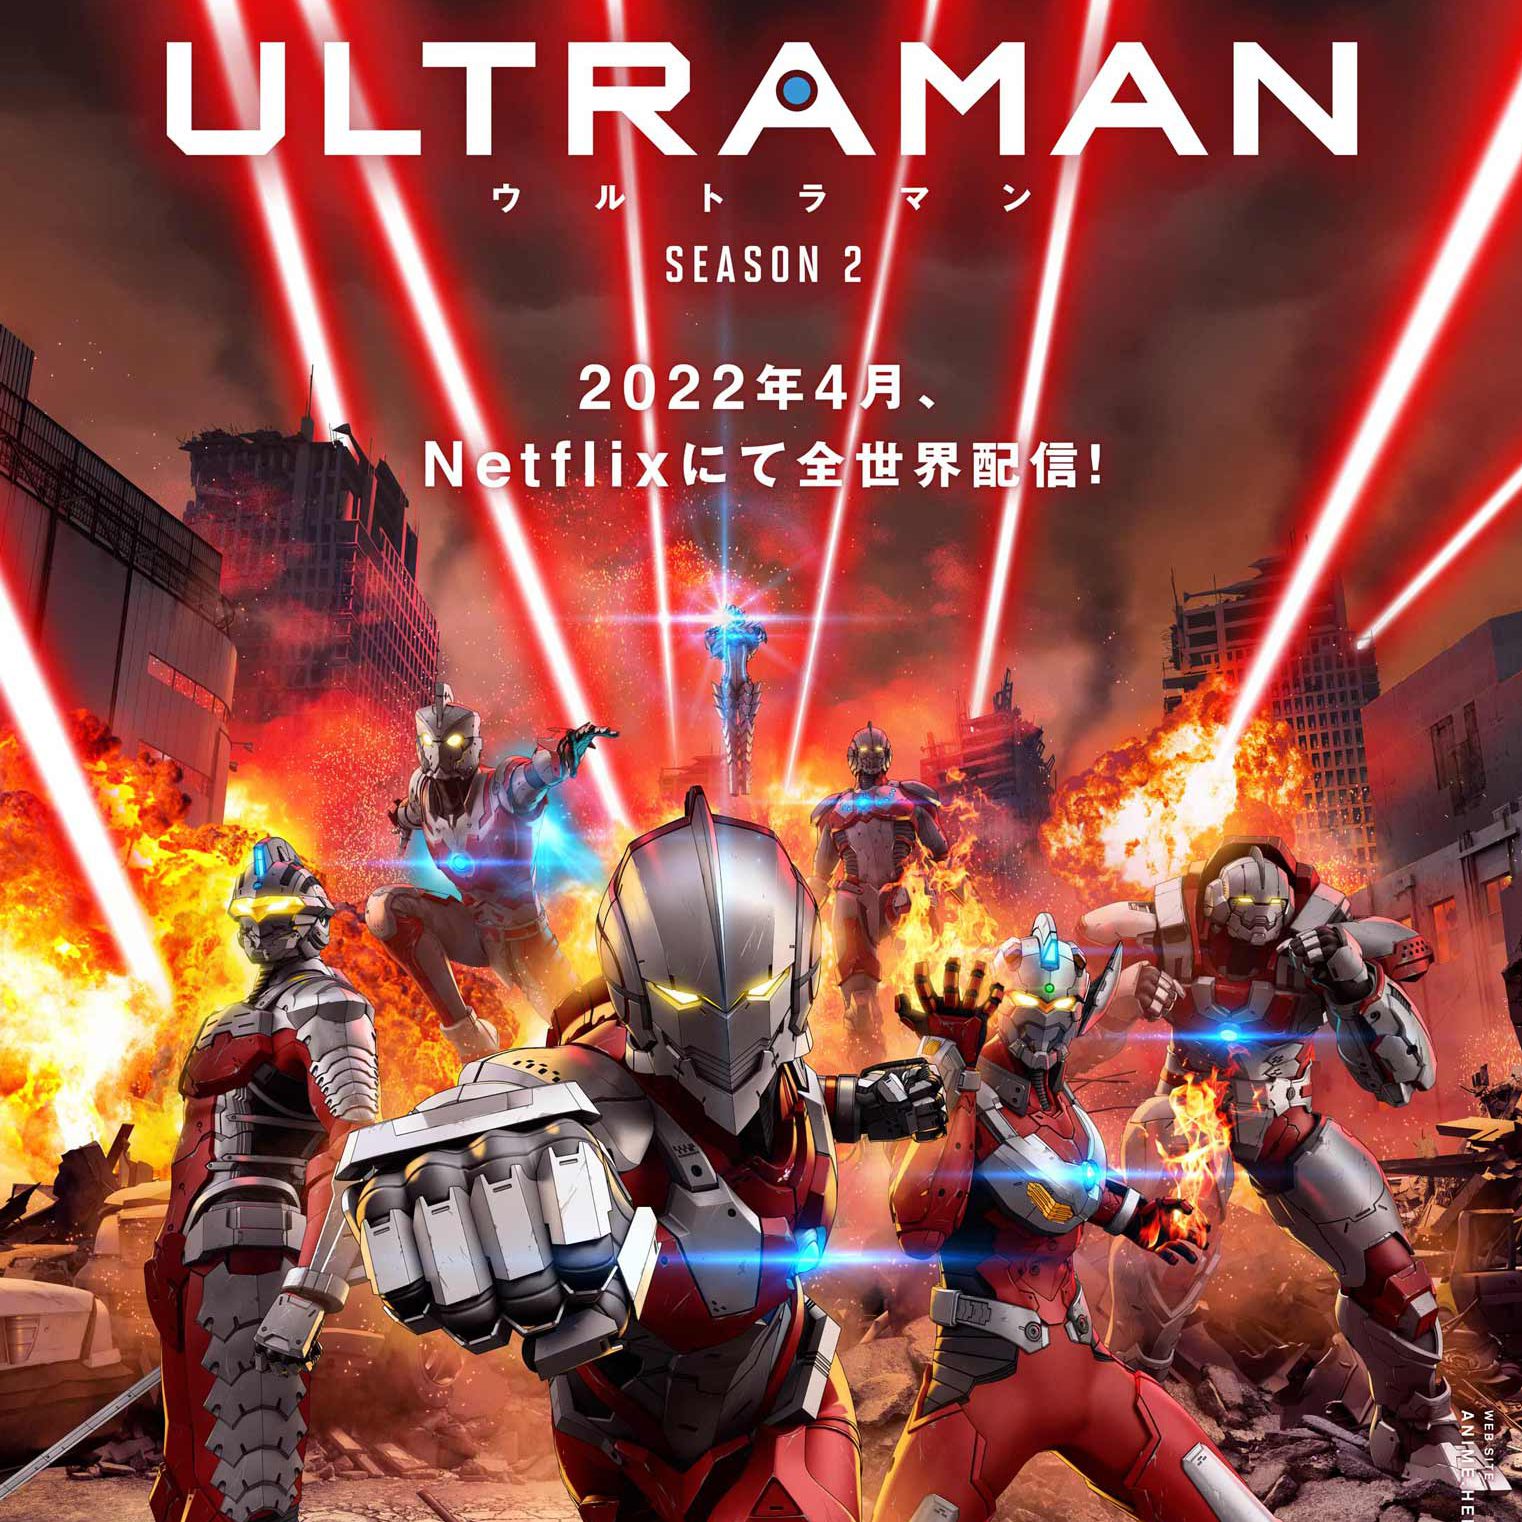 Ultraman Season 2 Web Series 2022  Release Date Review Cast Trailer  Watch Online at Netflix  Gadgets 360